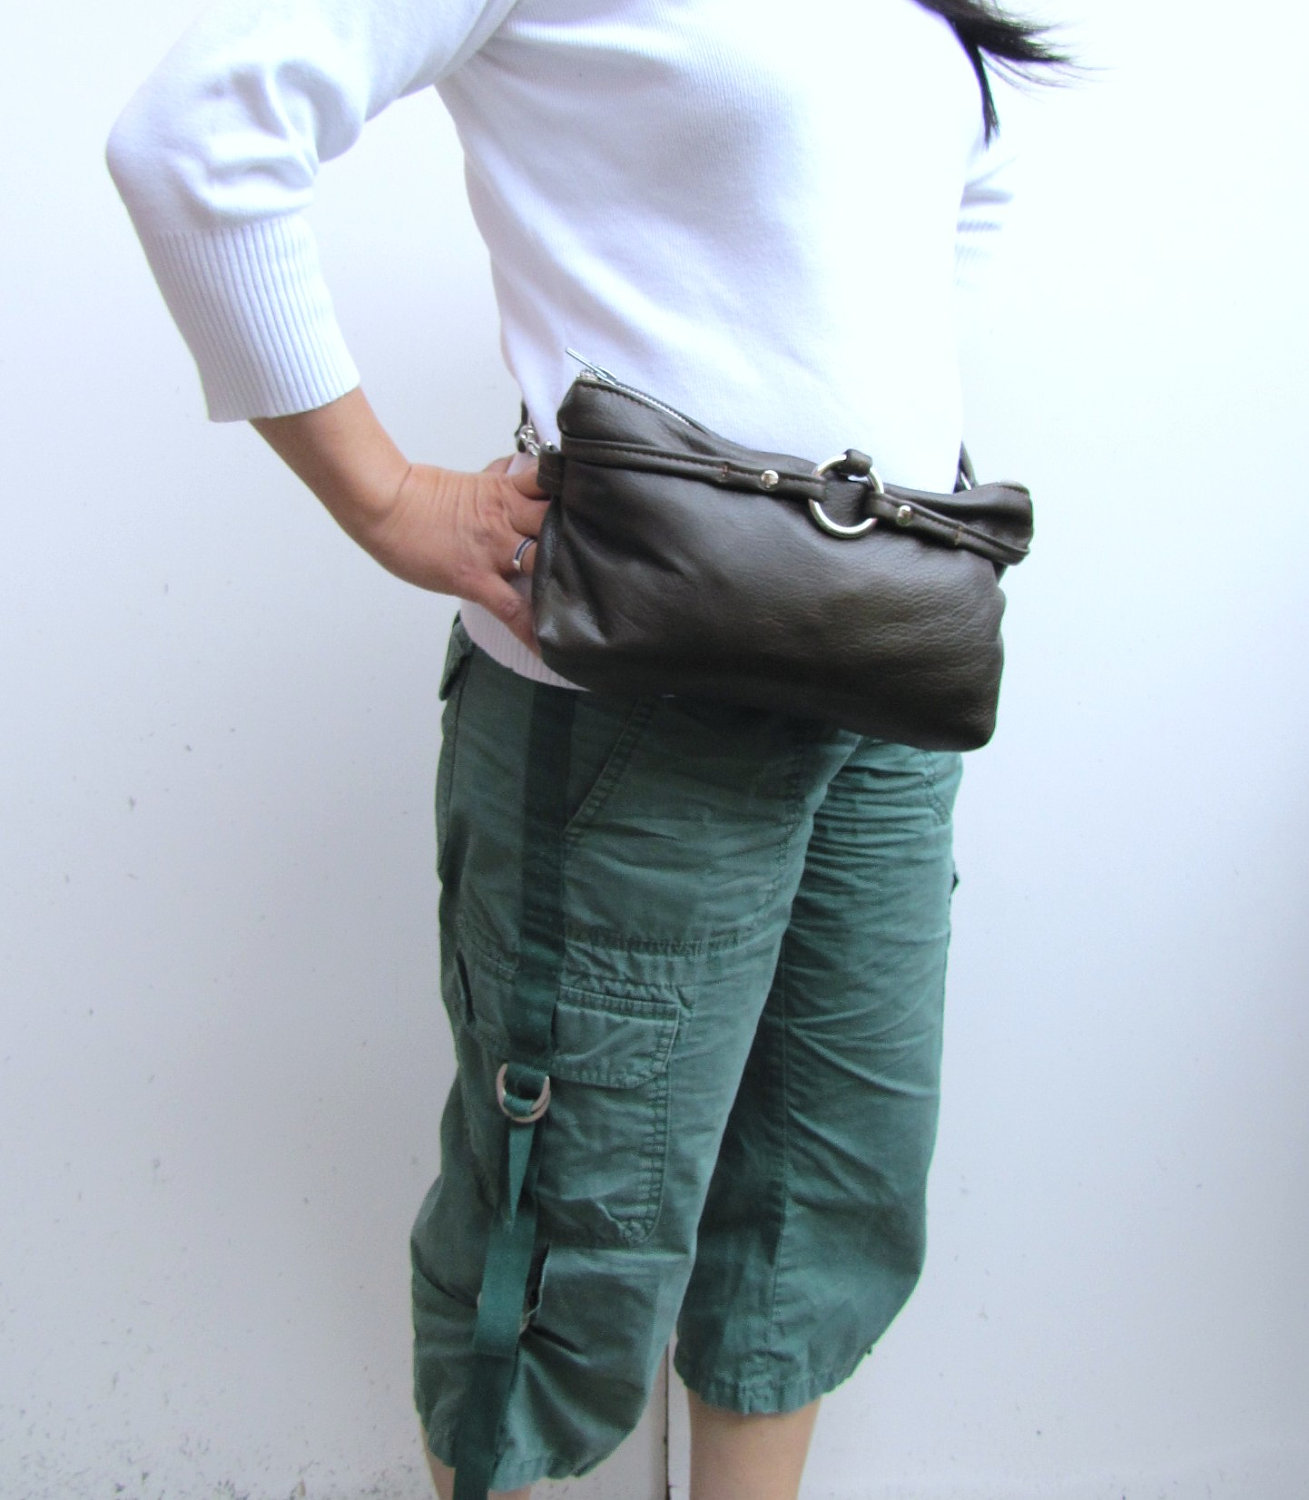 Fanny Pack Soft Full Grain Leather Belt Bag 